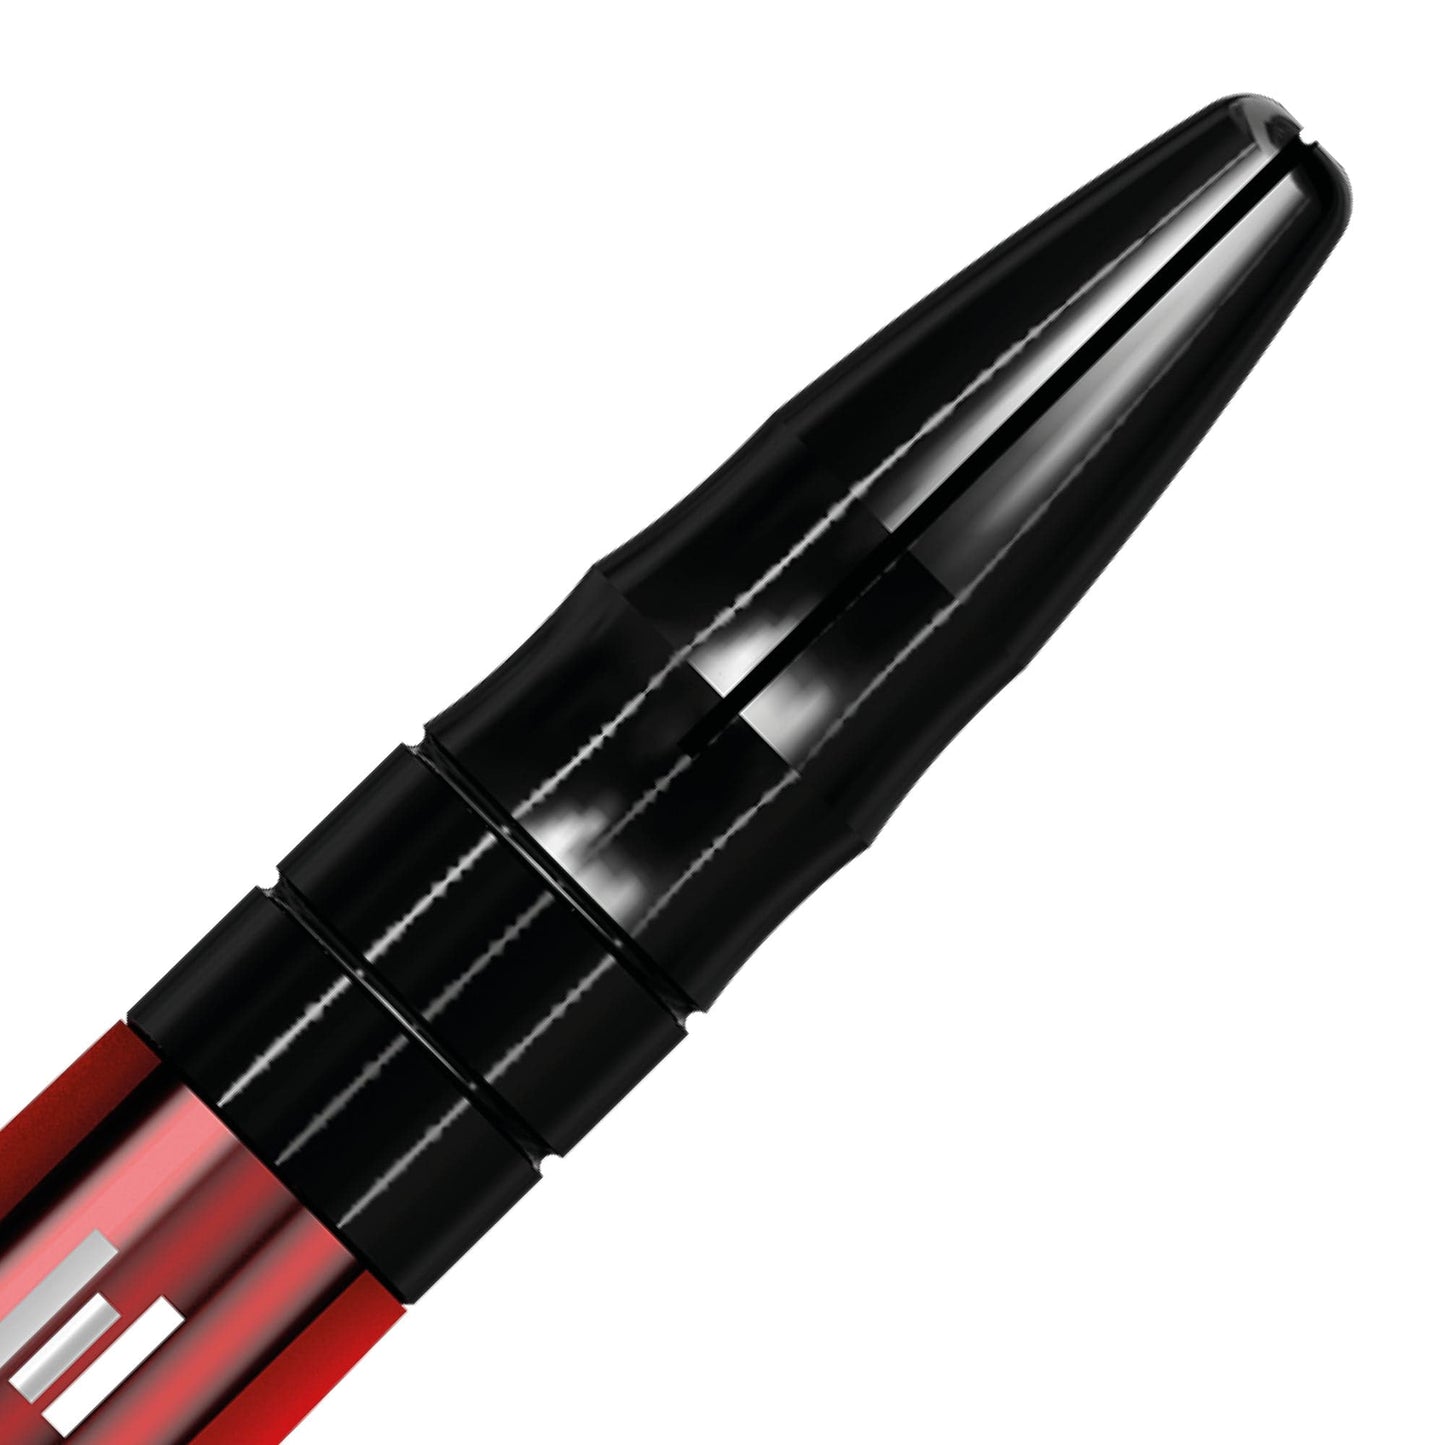 Mission Sabre Shafts - Polycarbonate Dart Stems - Red - Black Top